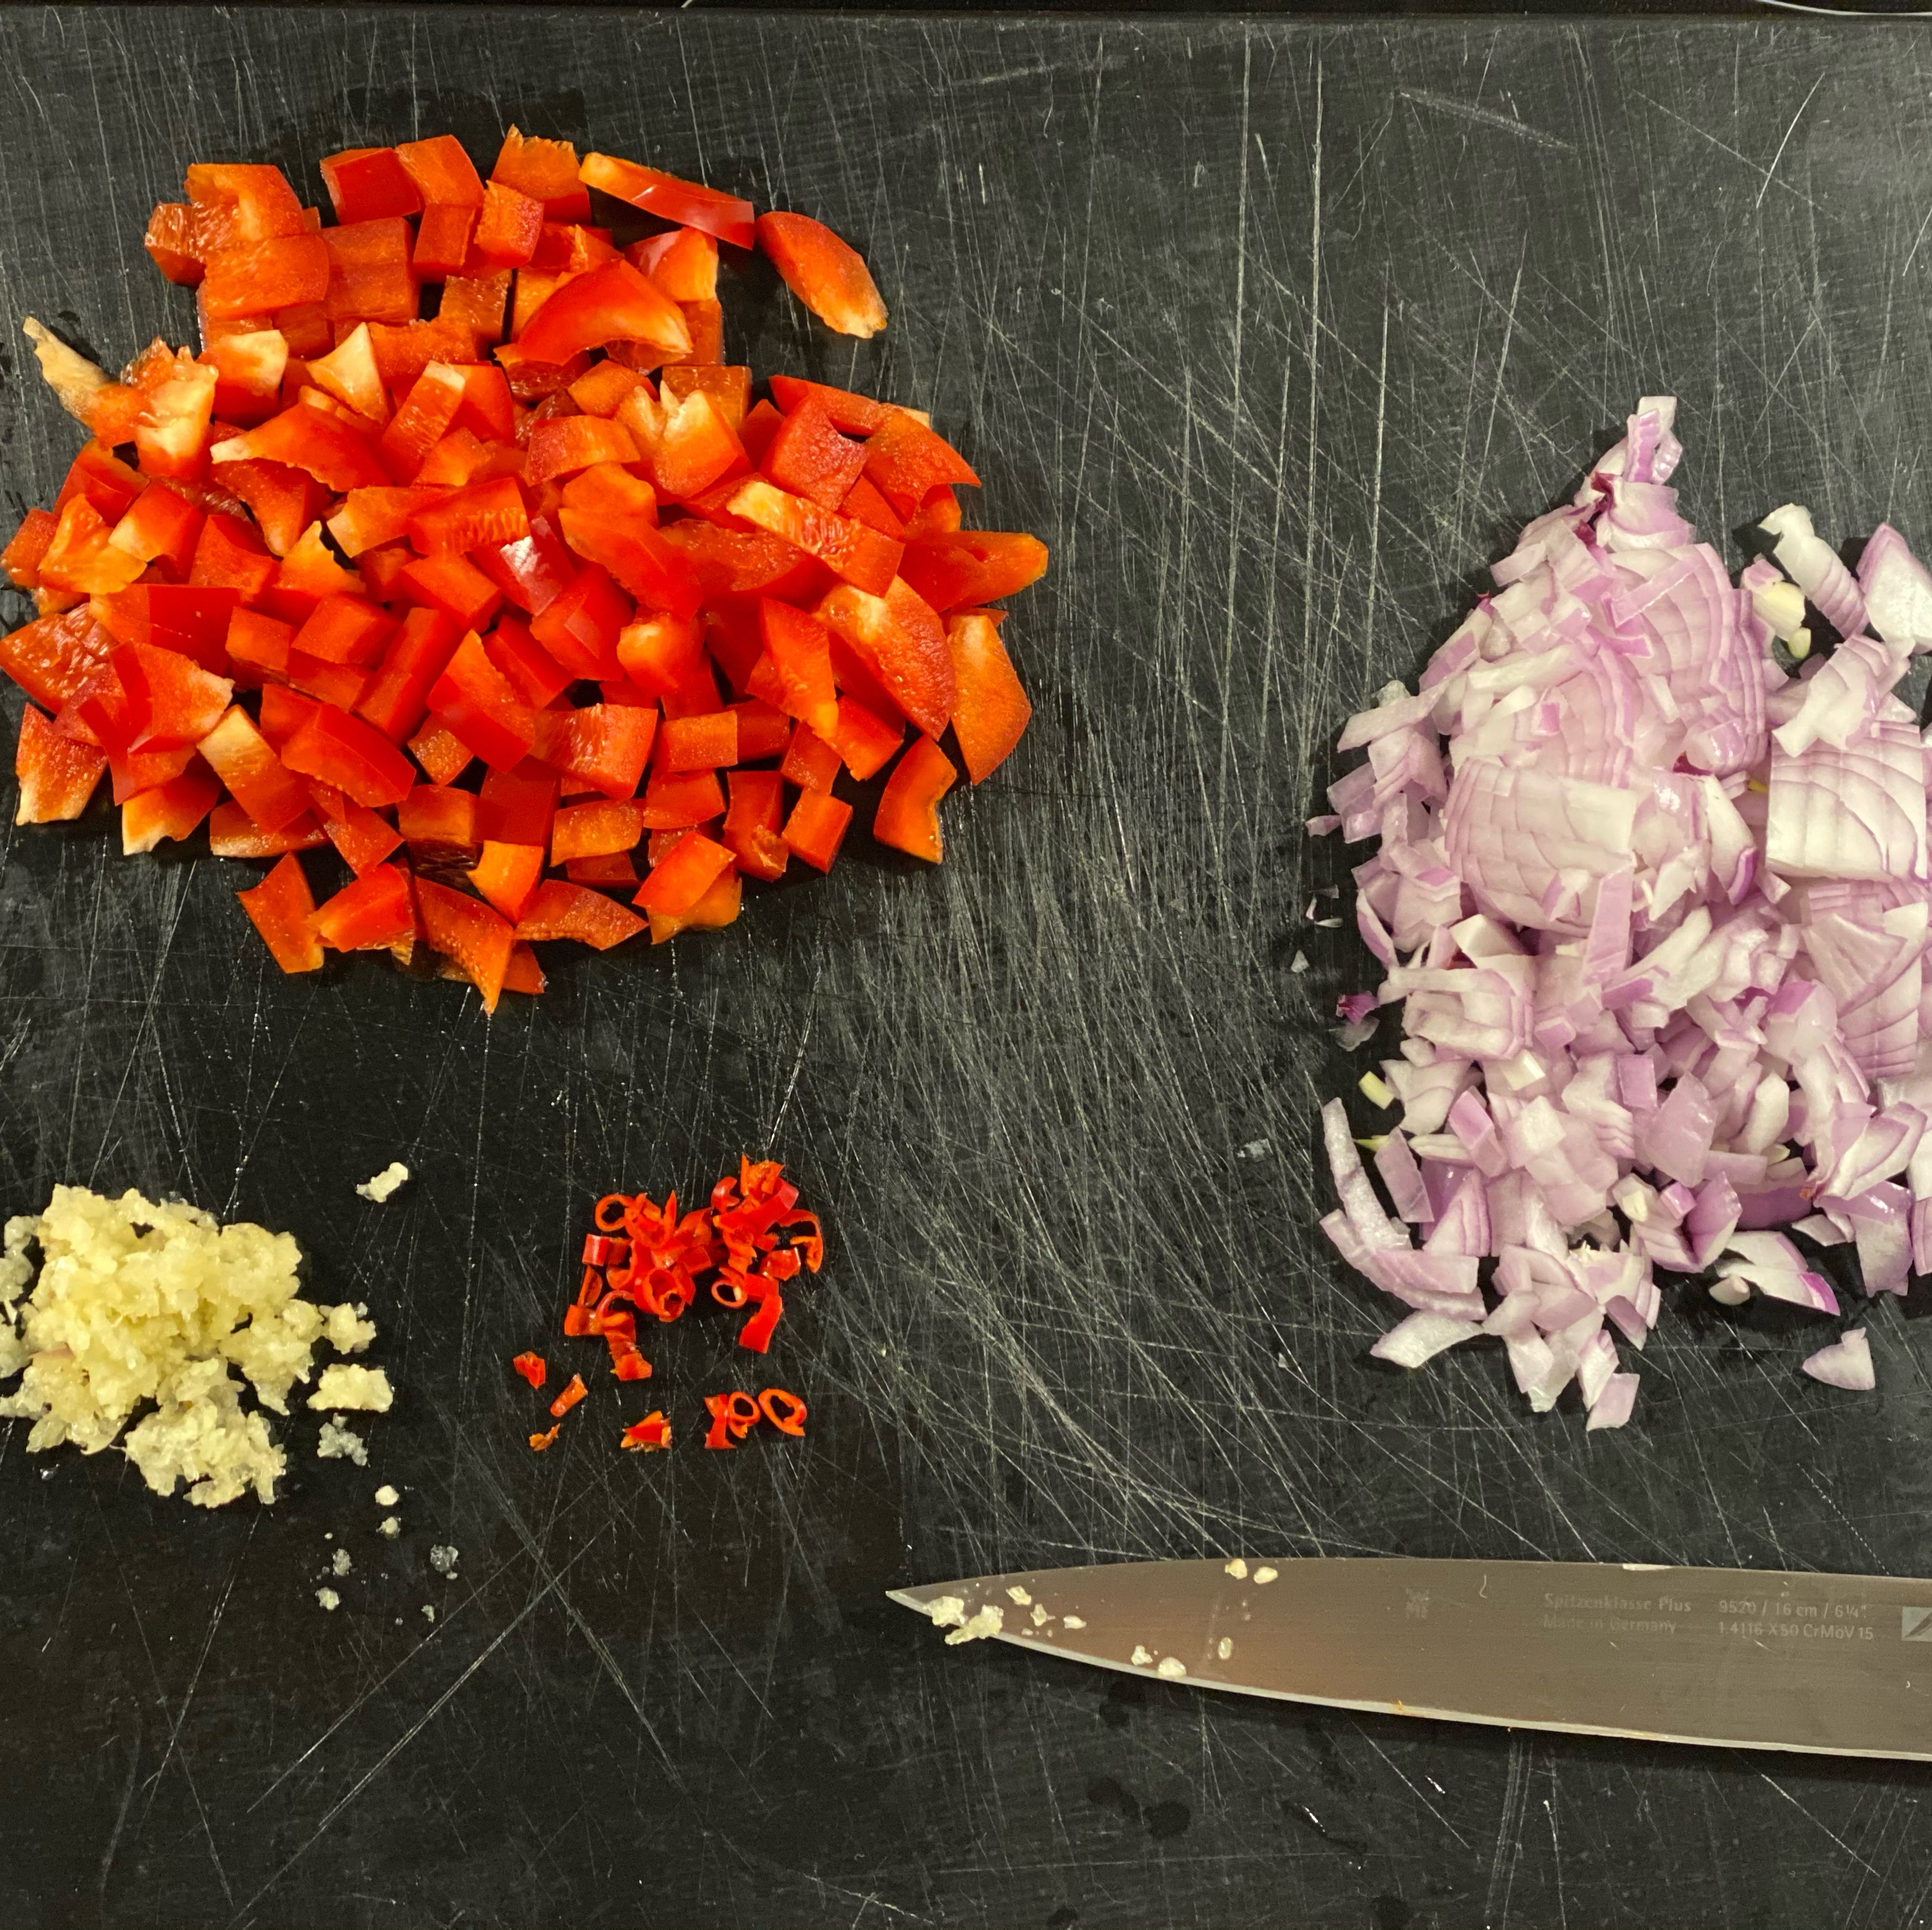 Zwiebel, Chili und Paprika klein schneiden. Knoblauch fein hacken.